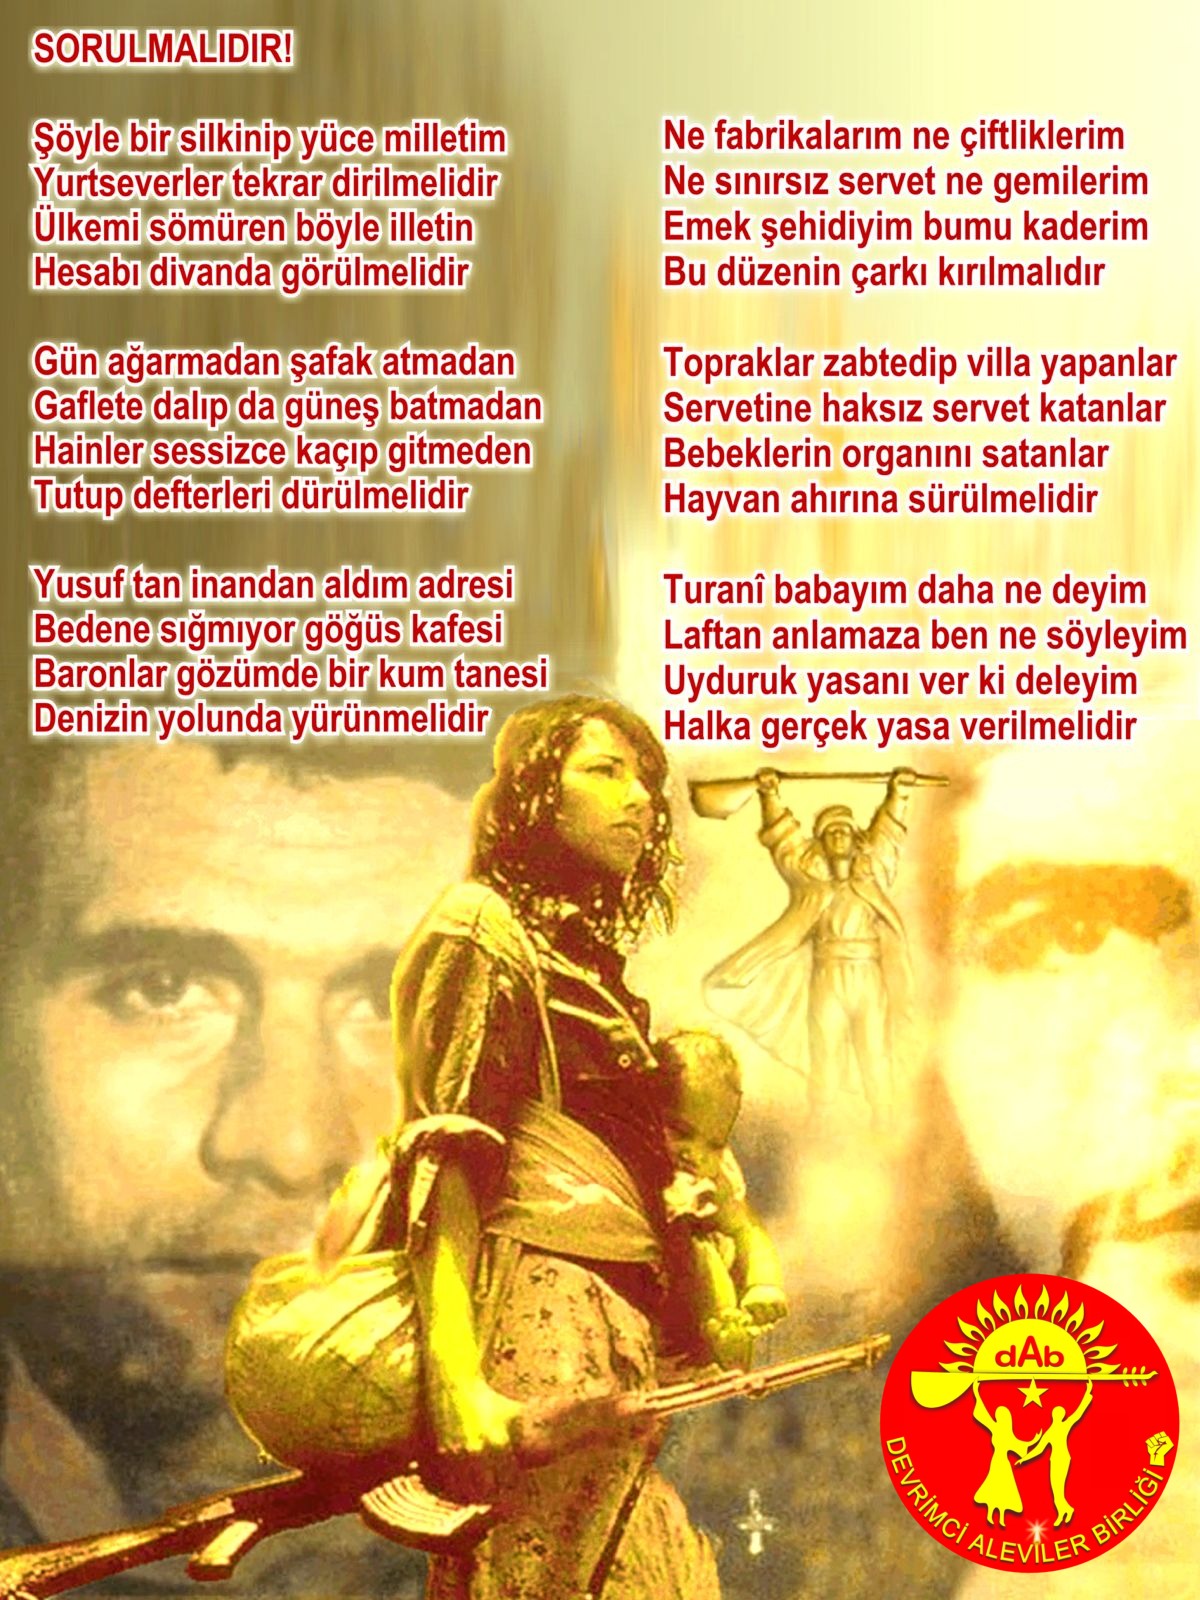 Alevi Bektaşi Kızılbaş Pir Sultan Devrimci Aleviler Birliği DAB sorulmalidir